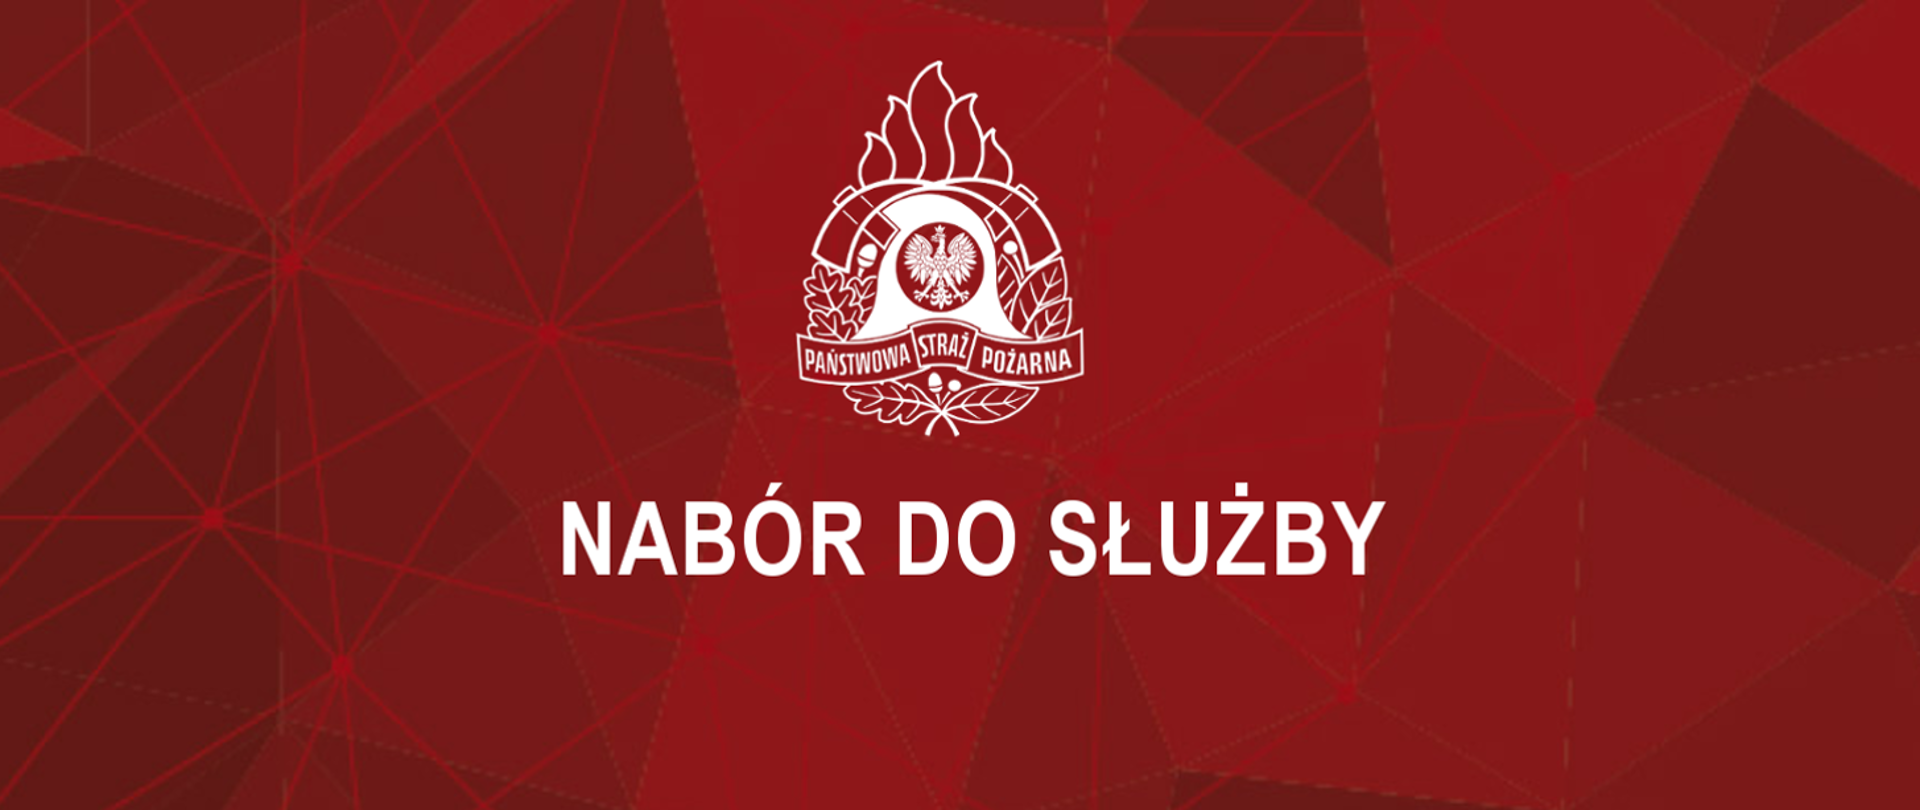 Logotyp PSP i podpis "Nabór do służby" na czerwonym tle.